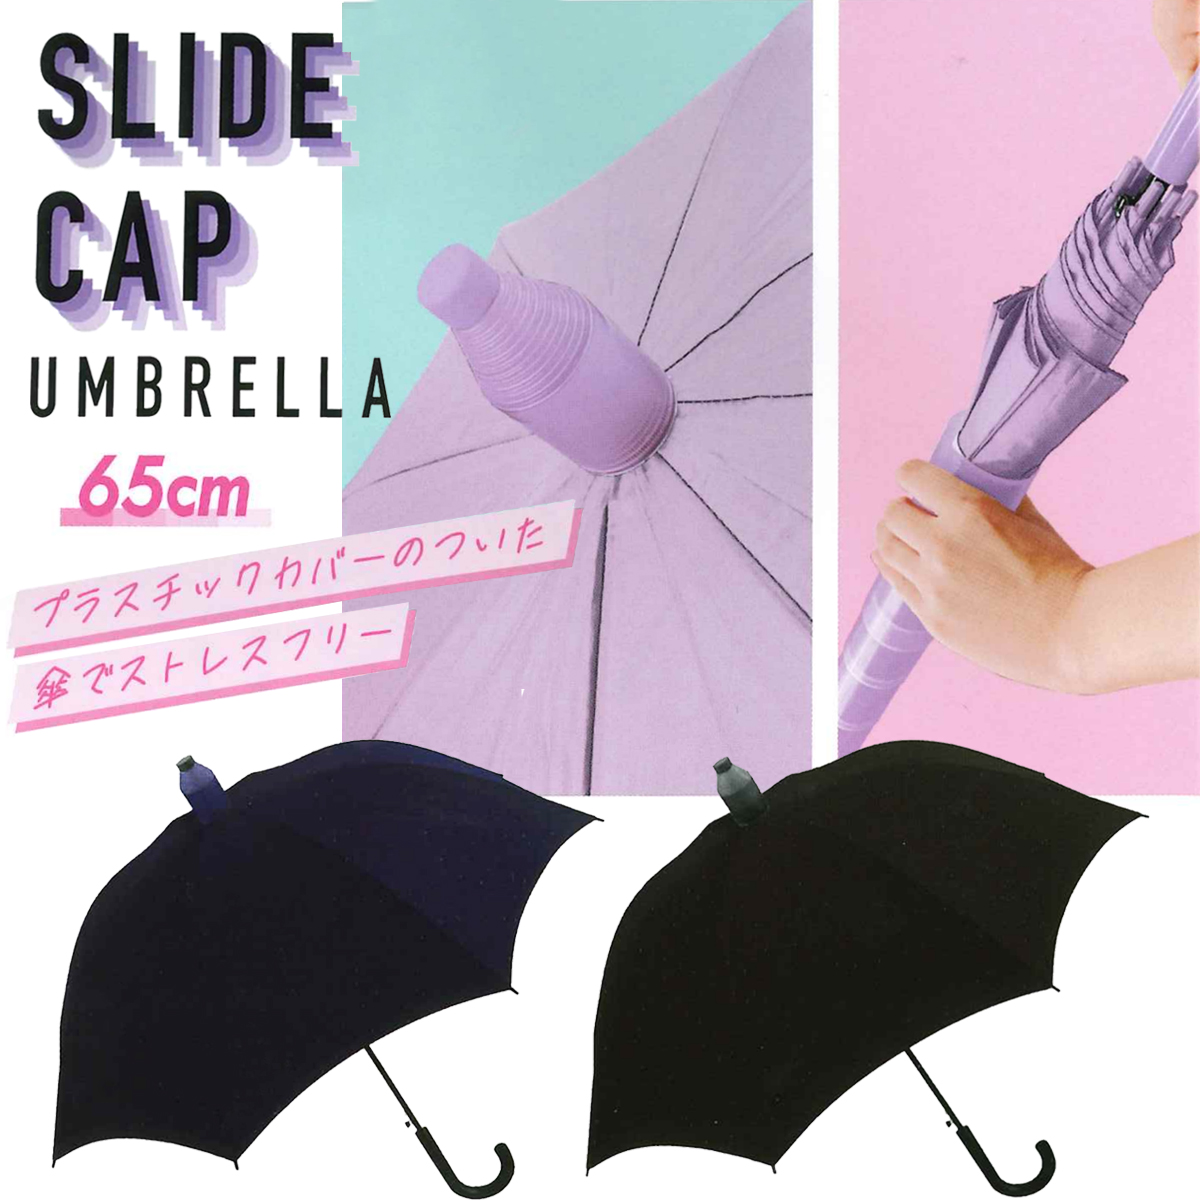 【CRUX】スライドキャップアンブレラ 65cm 婦人傘